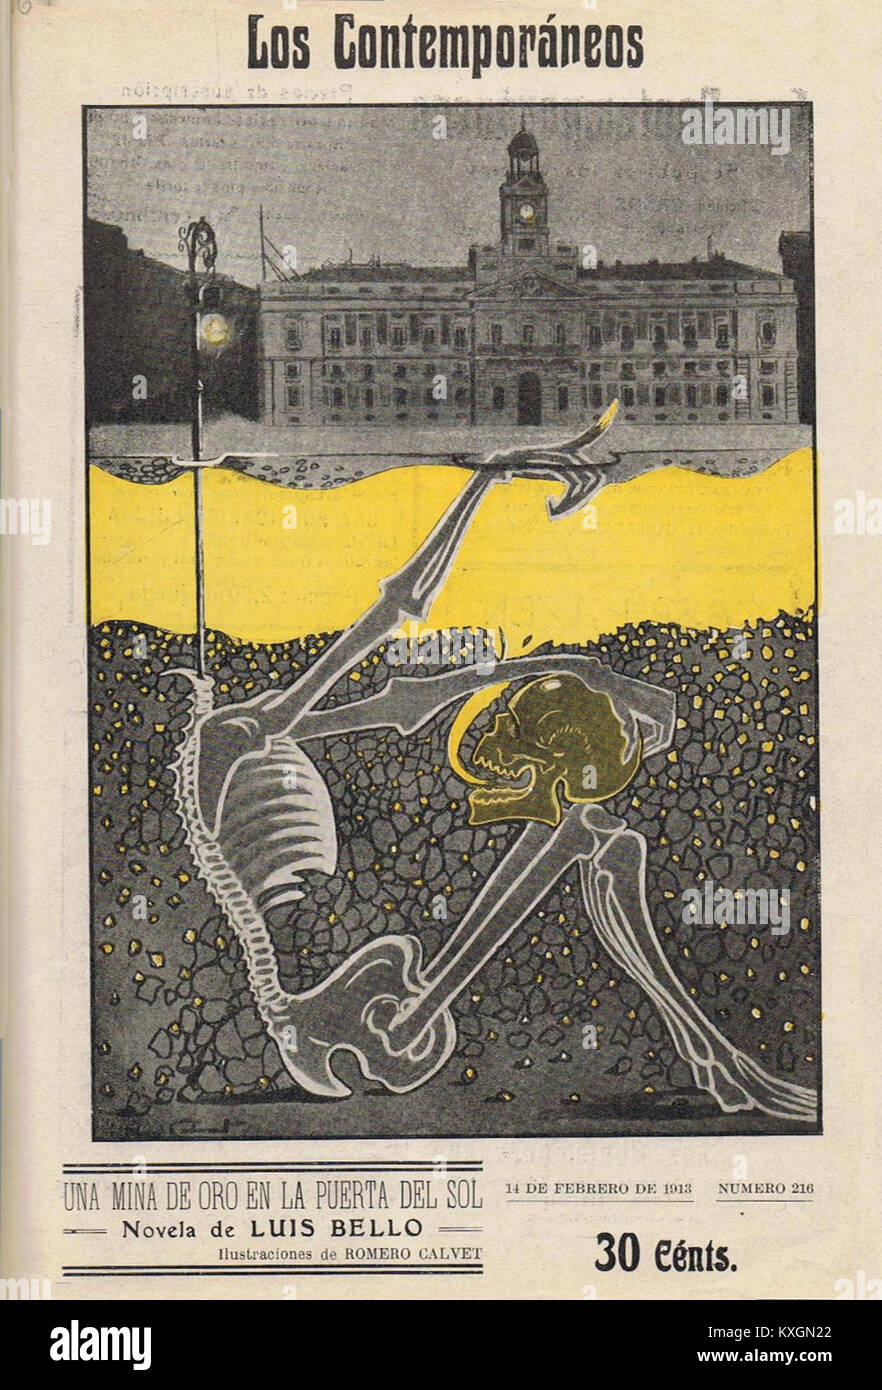 1913-02-14, Los Contemporáneos, Una mina de oro en la Puerta del Sol, novela de Luis Bello, ilustraciones de Romero Calvet Stock Photo